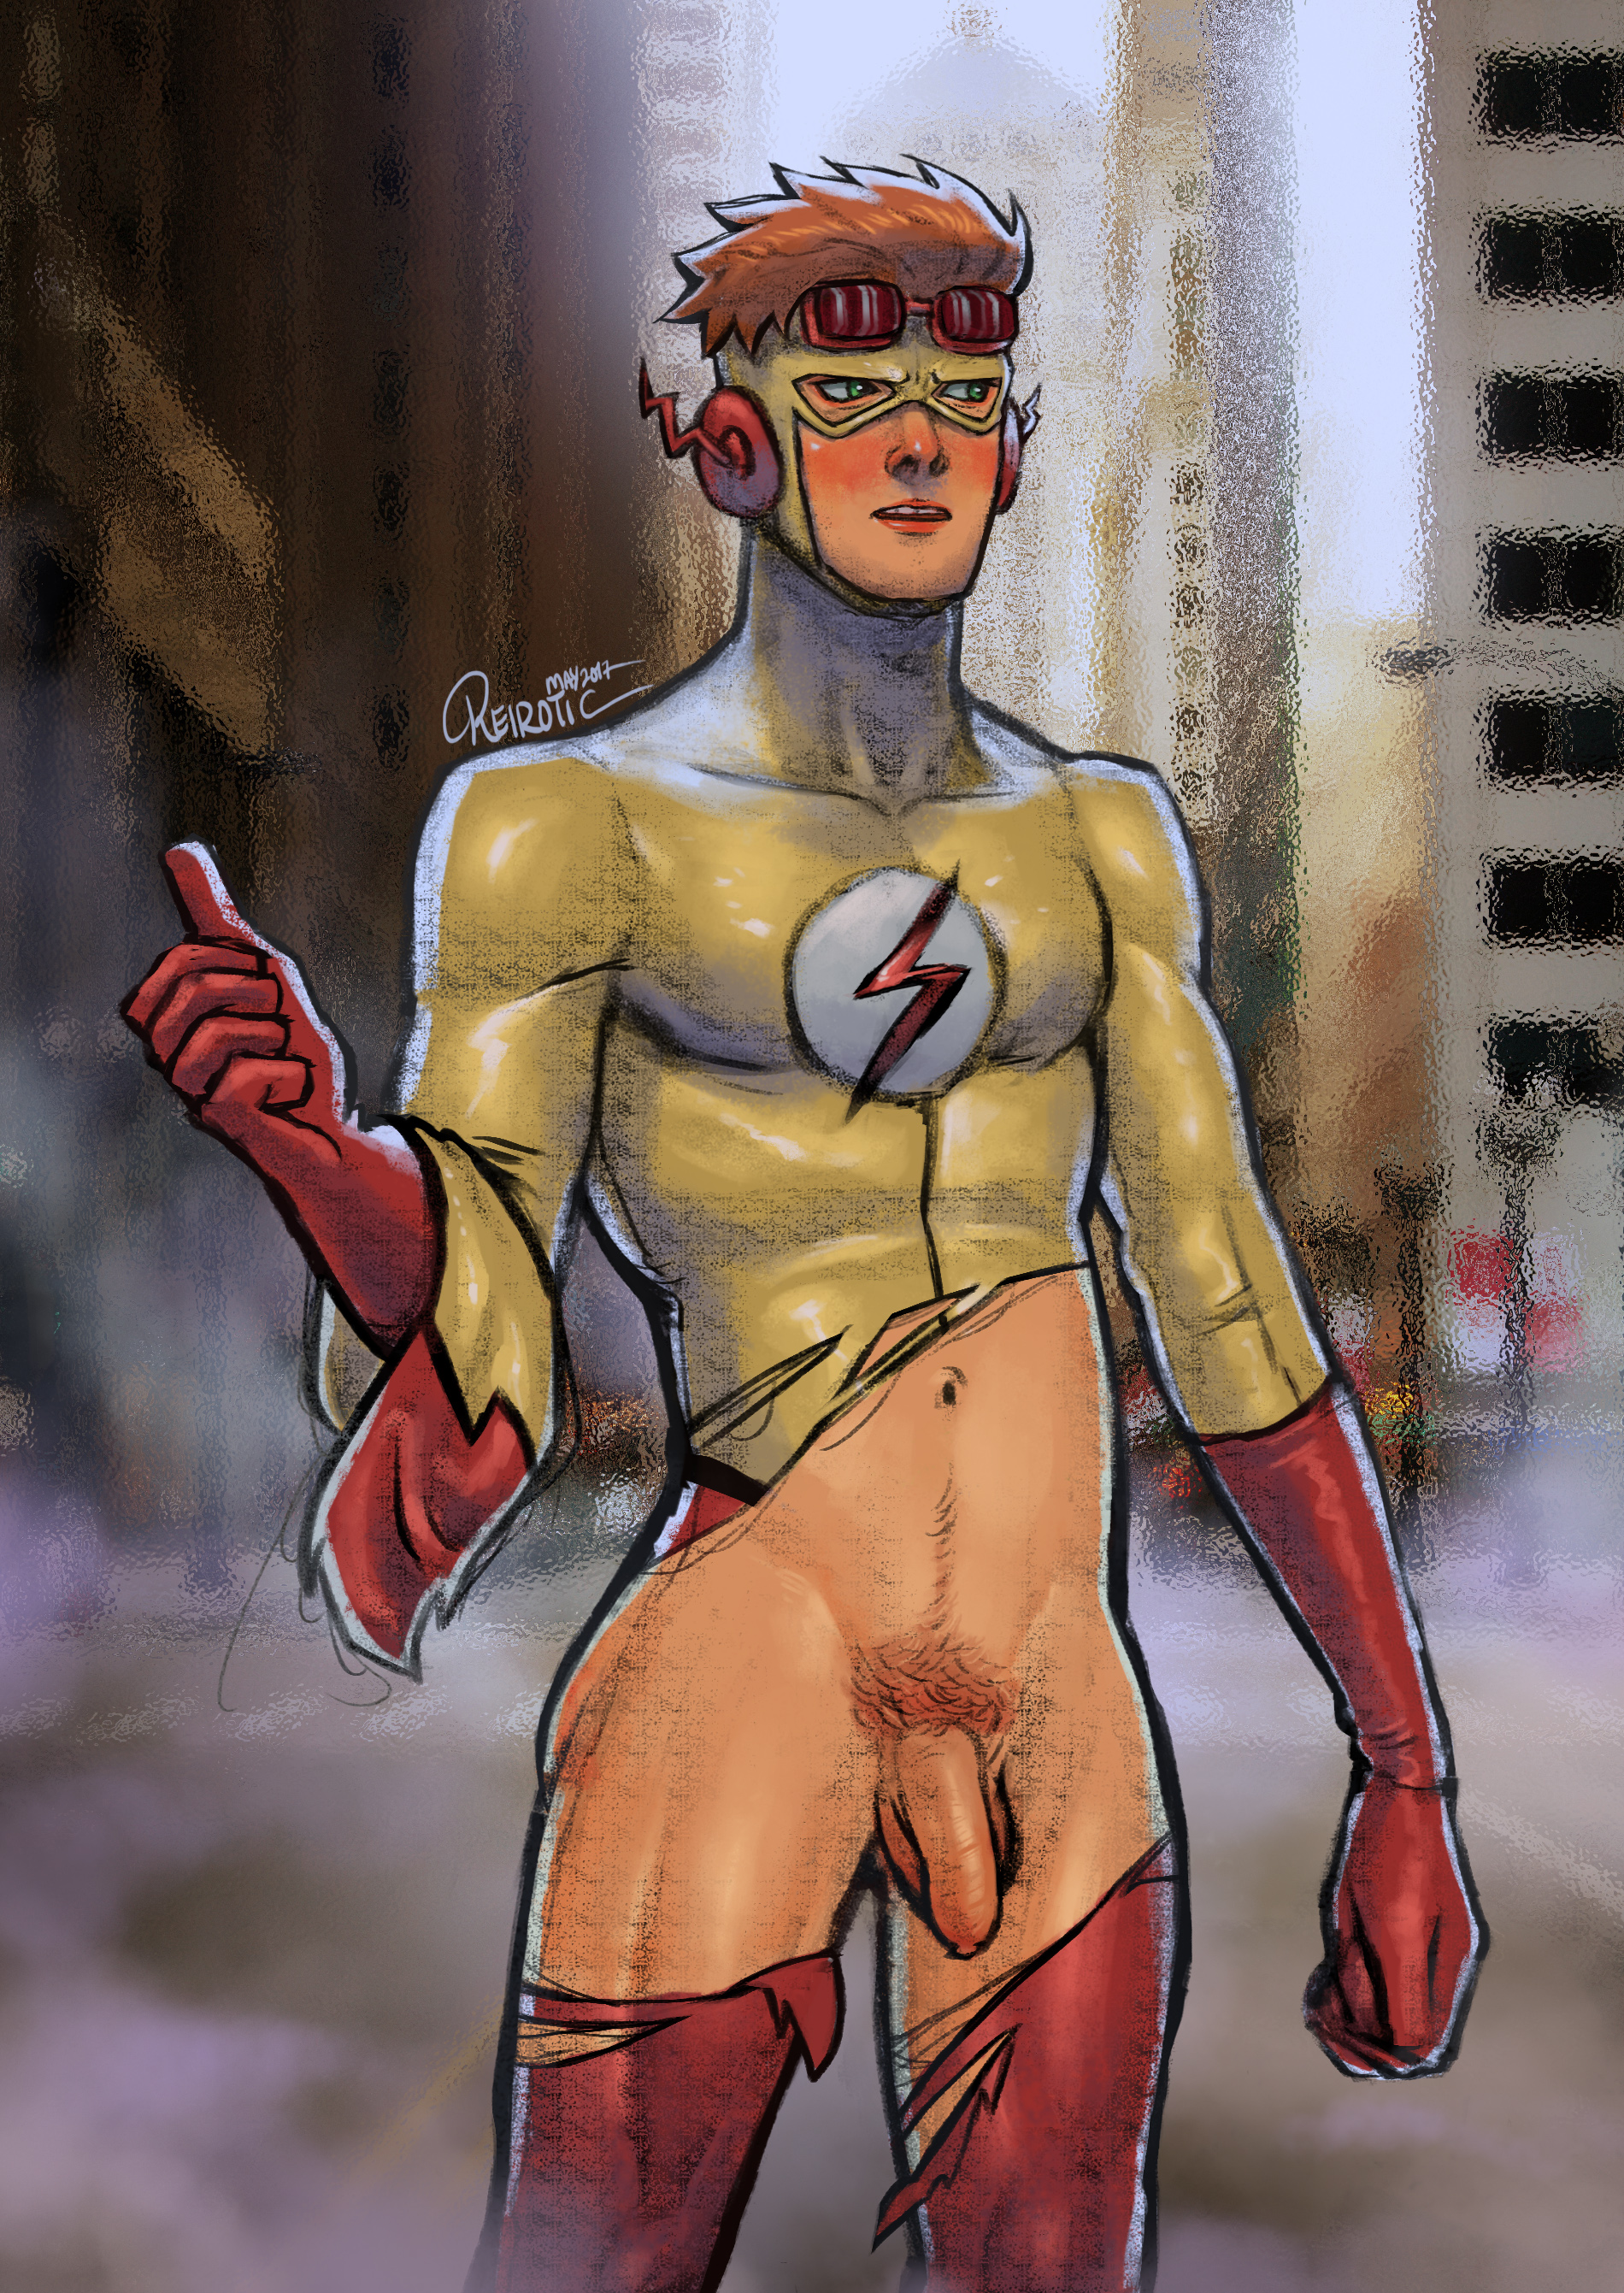 Reirotic - Kid Flash DC 02.jpg.